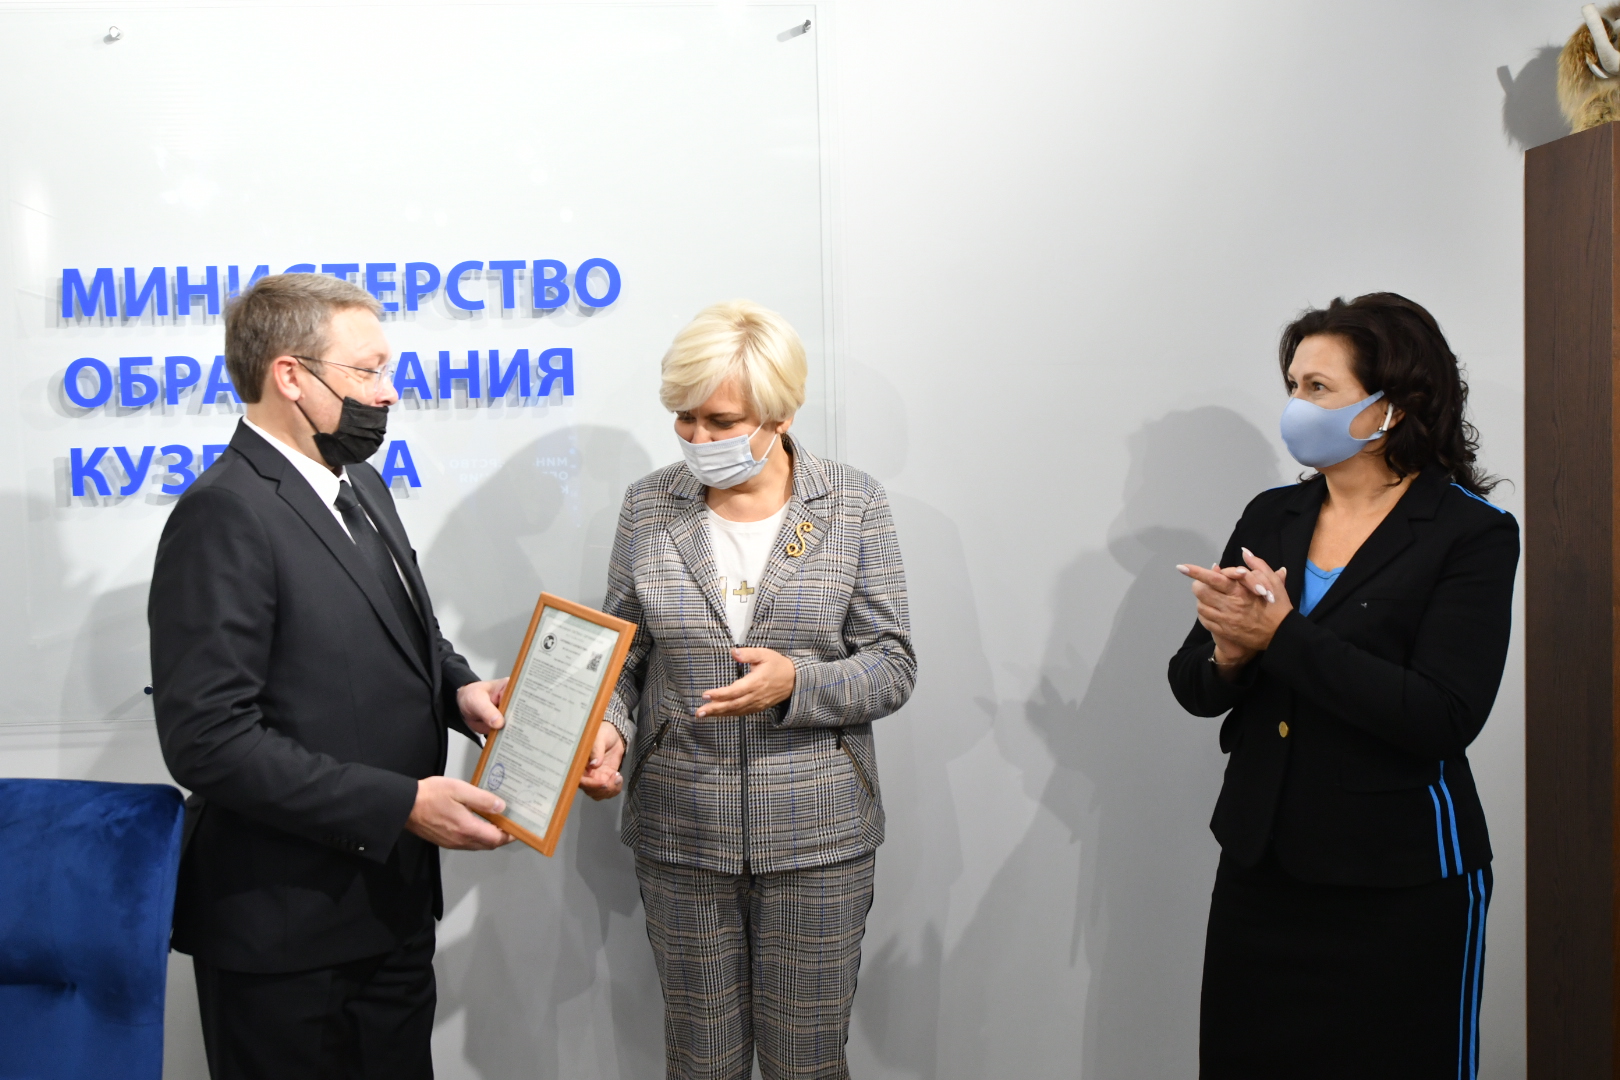 Министерство образования Кузбасса получило сертификат соответствия системе менеджмента качества  